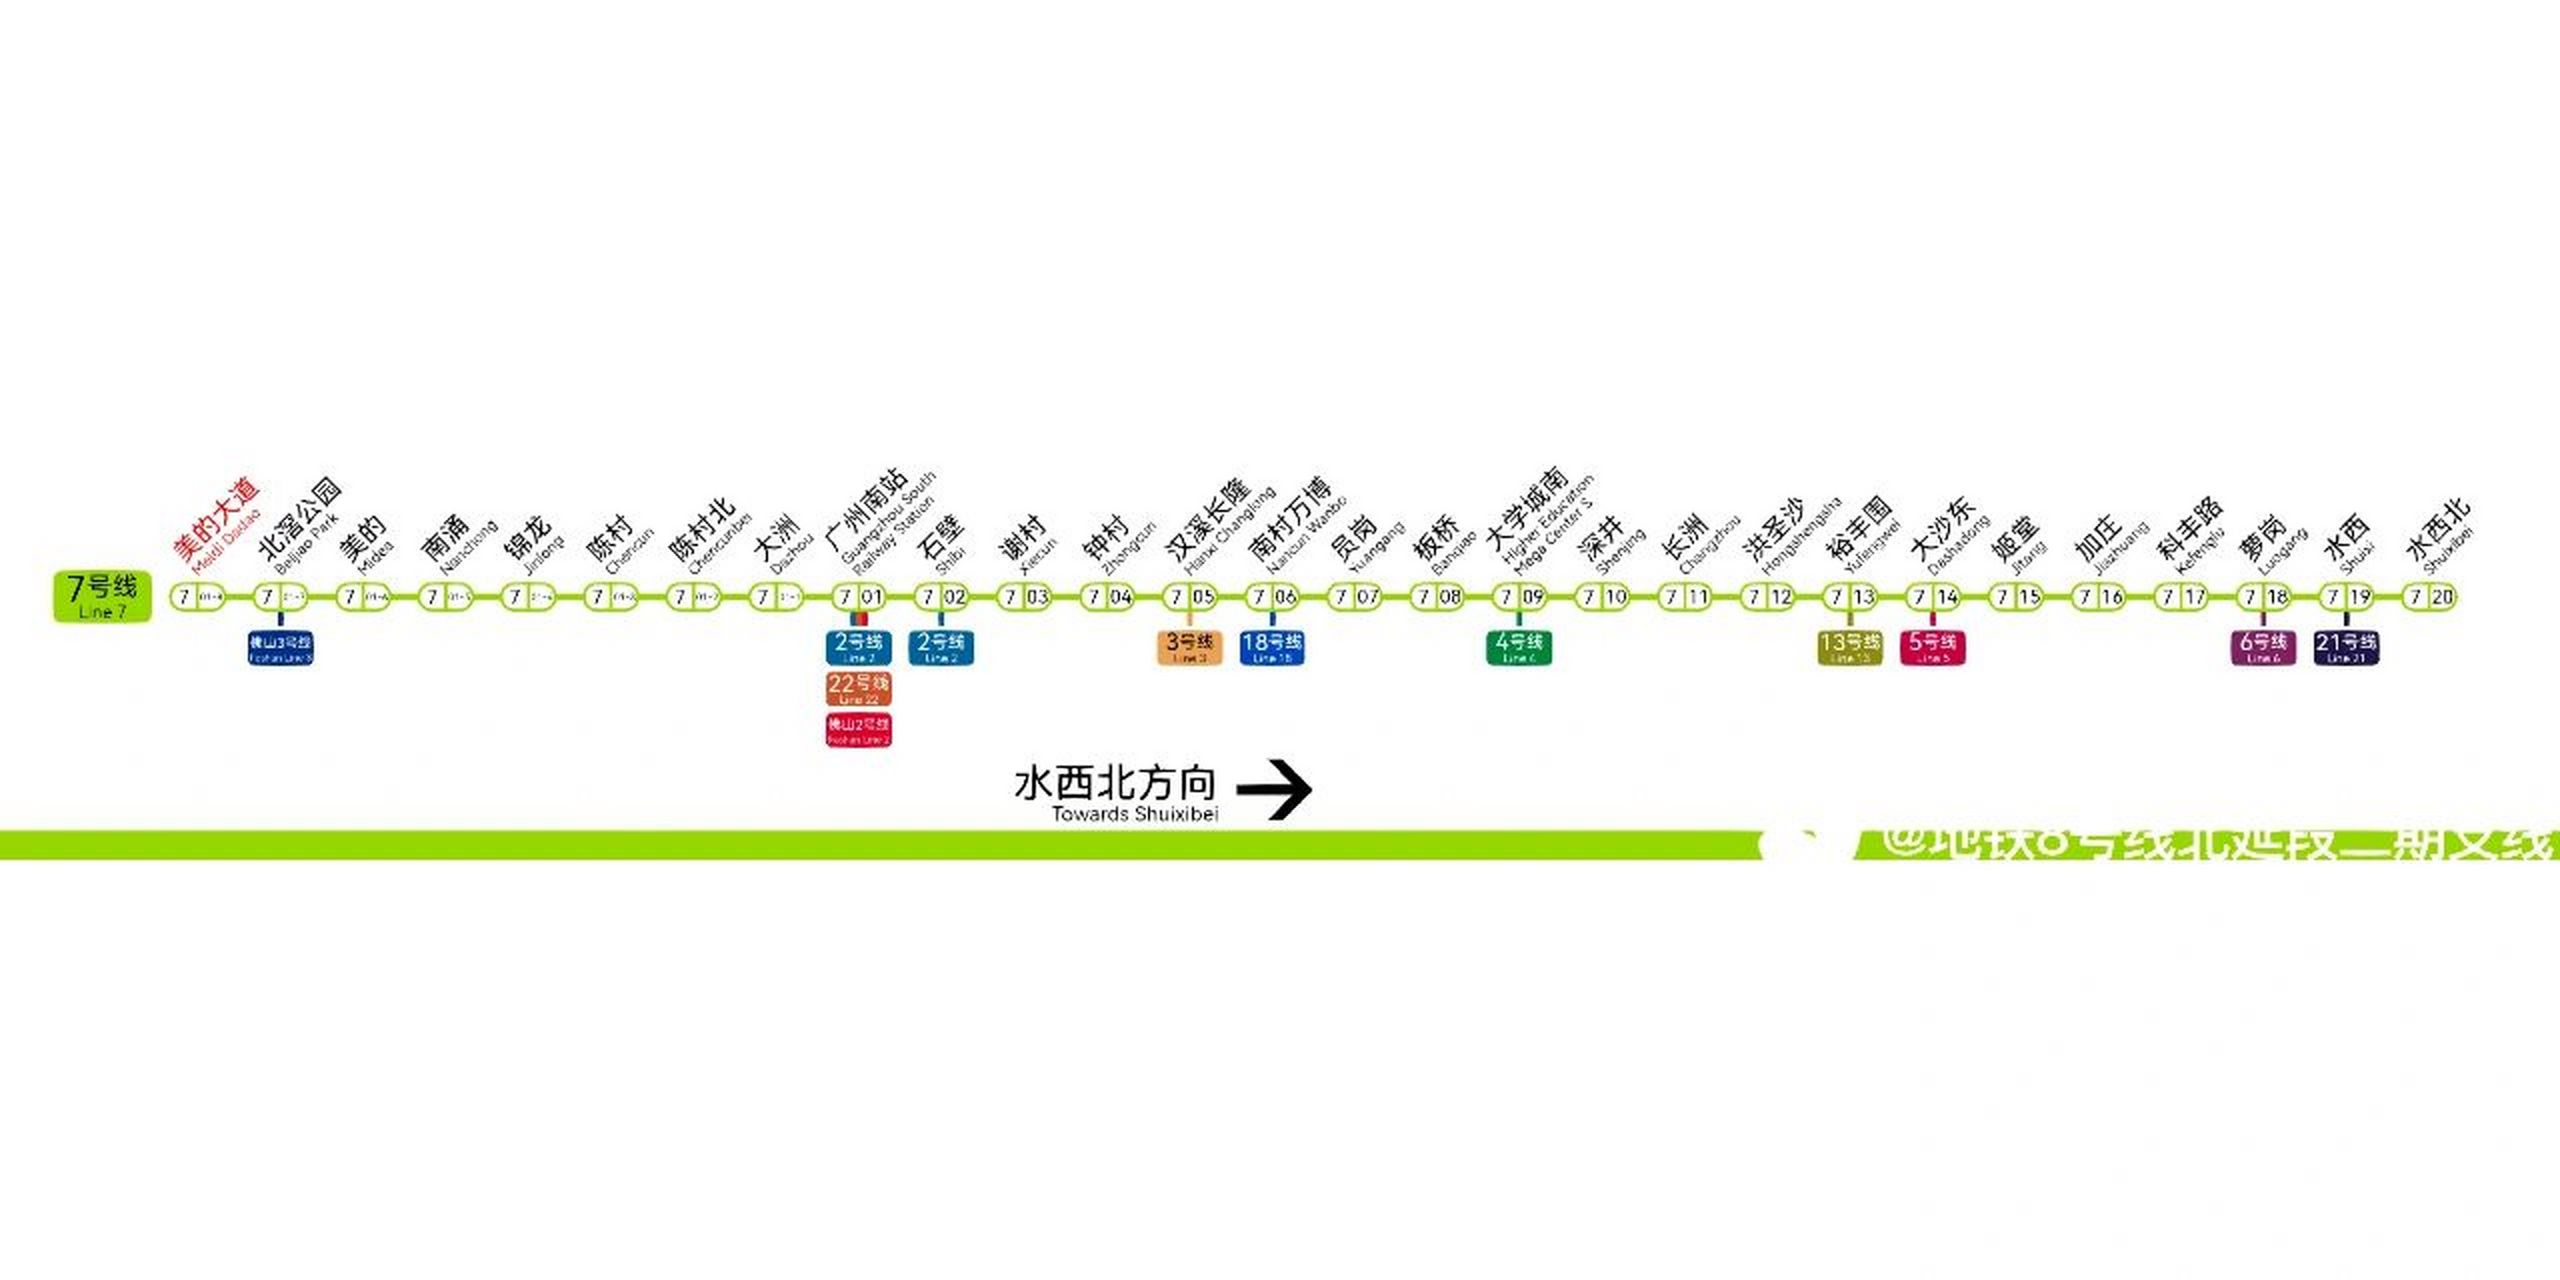 广州地铁七号线二期图片